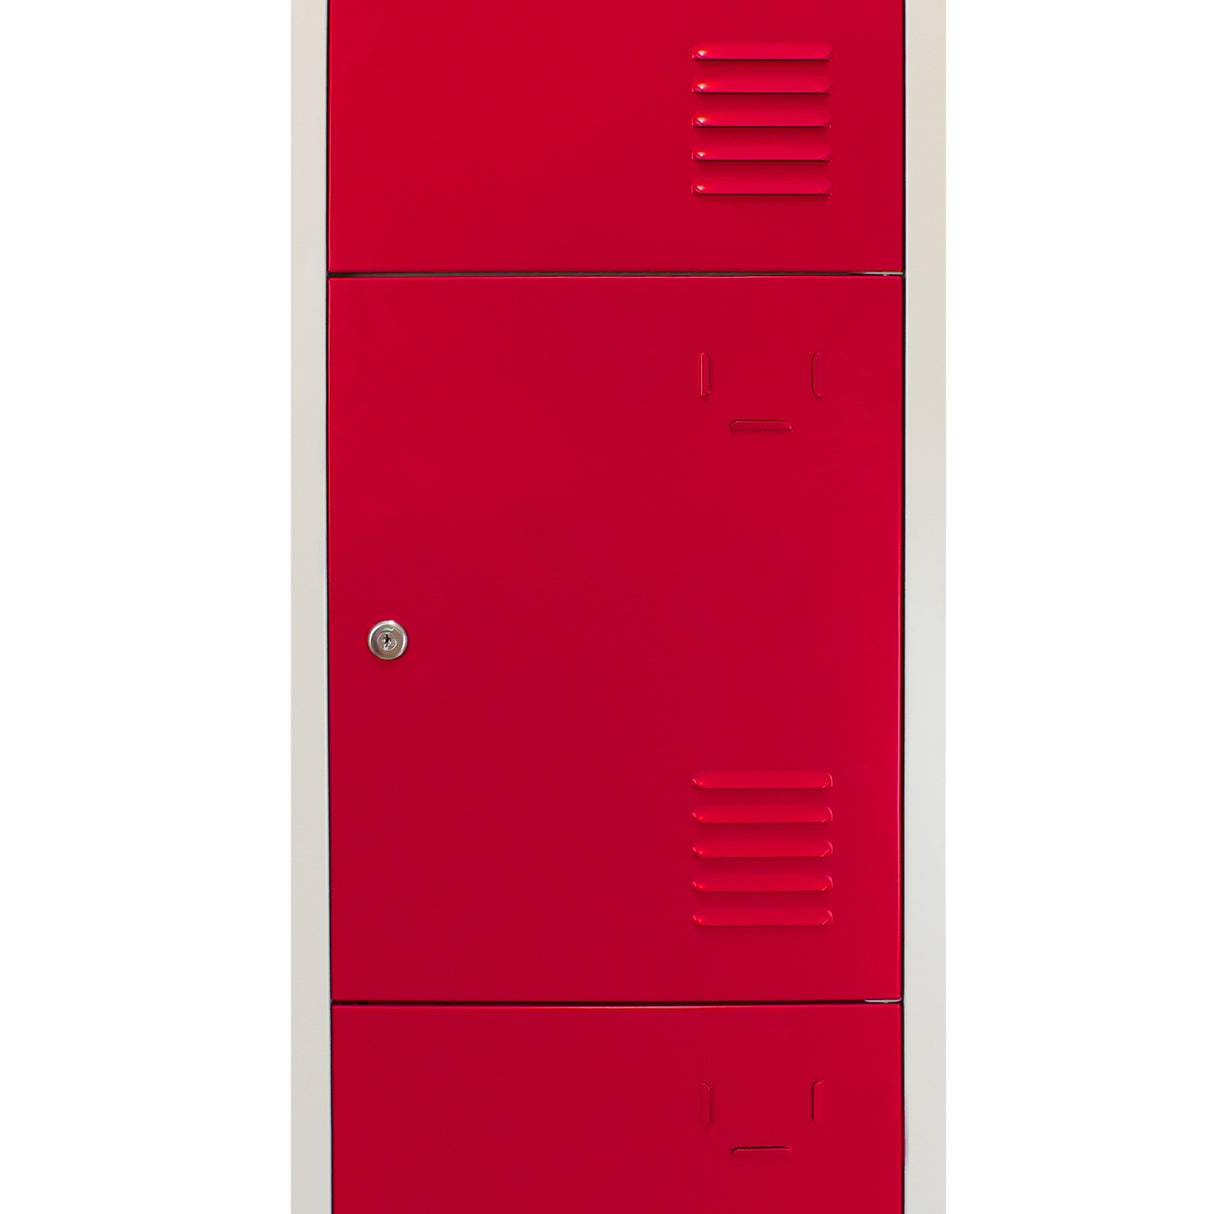 Metal Storage Lockers - Four Doors, Flatpacked, Red